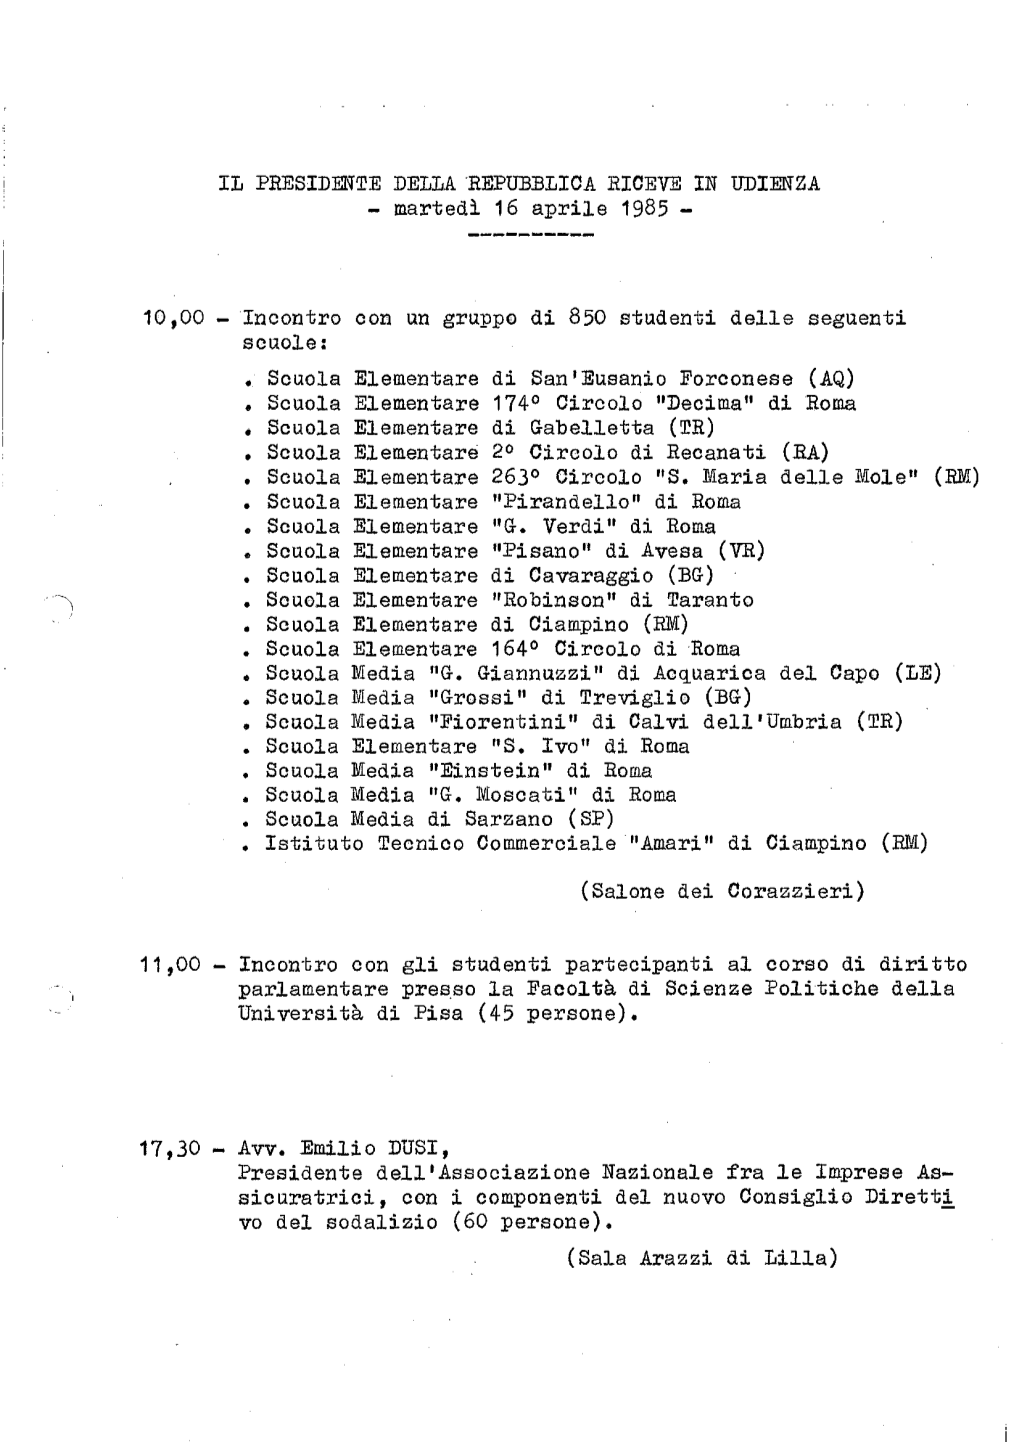 IL PRESIDENTE DELLA REPUBBLICA RICEVE in UDIENZA - Martedì 16 Aprile 1985